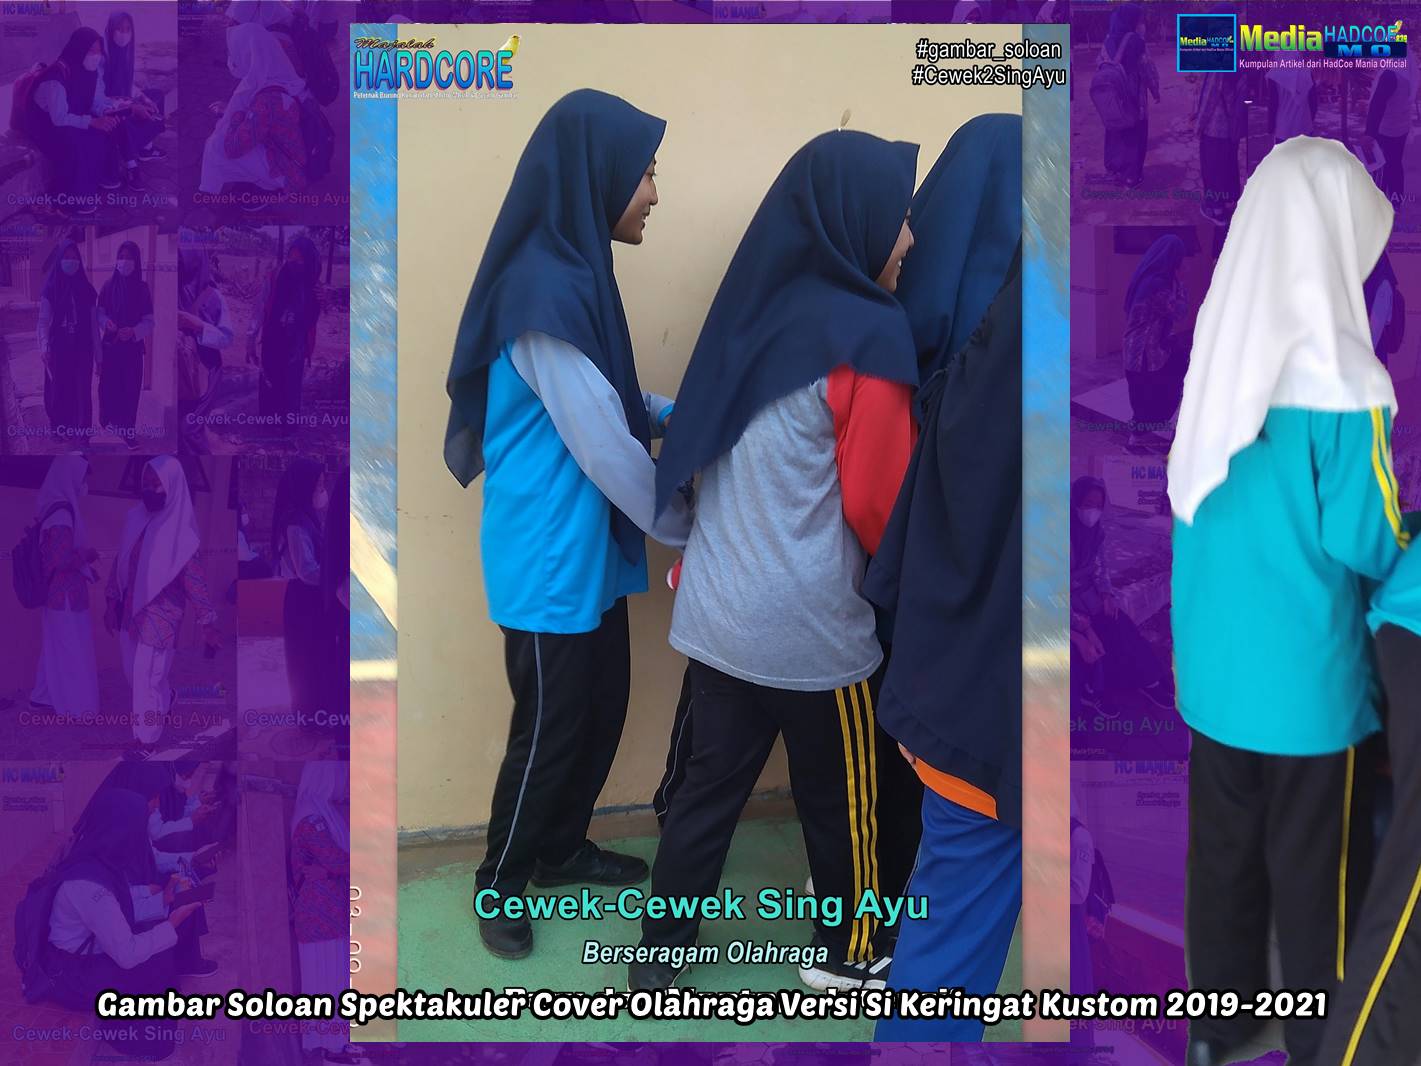 Gambar Soloan Spektakuler Cover Olahraga Versi Si Keringat Kustom 2019-2021